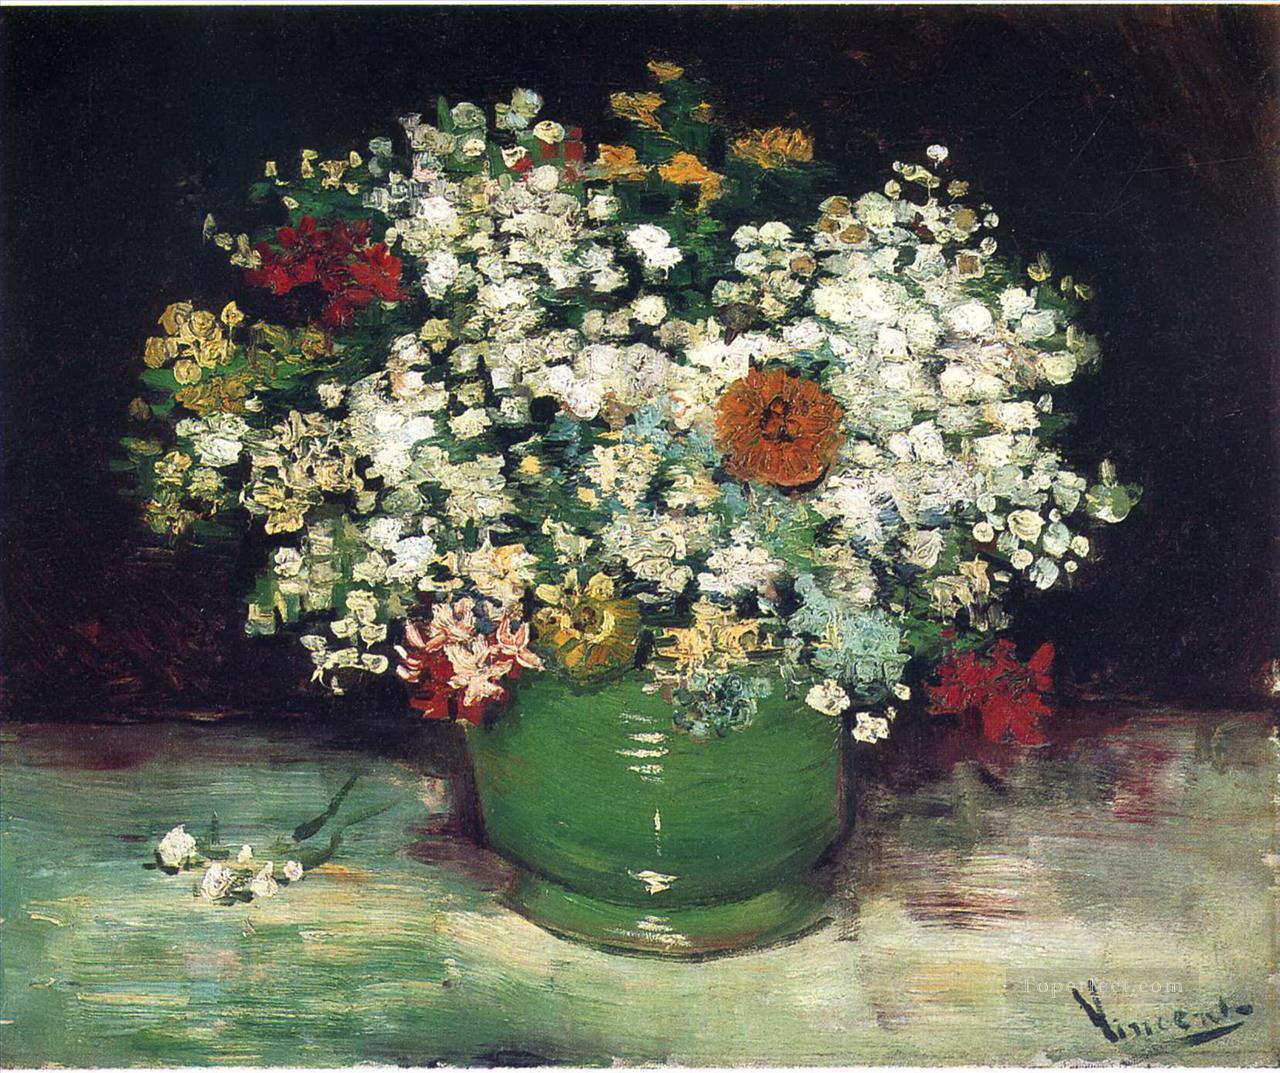 ジニアとその他の花が入った花瓶 フィンセント・ファン・ゴッホ油絵